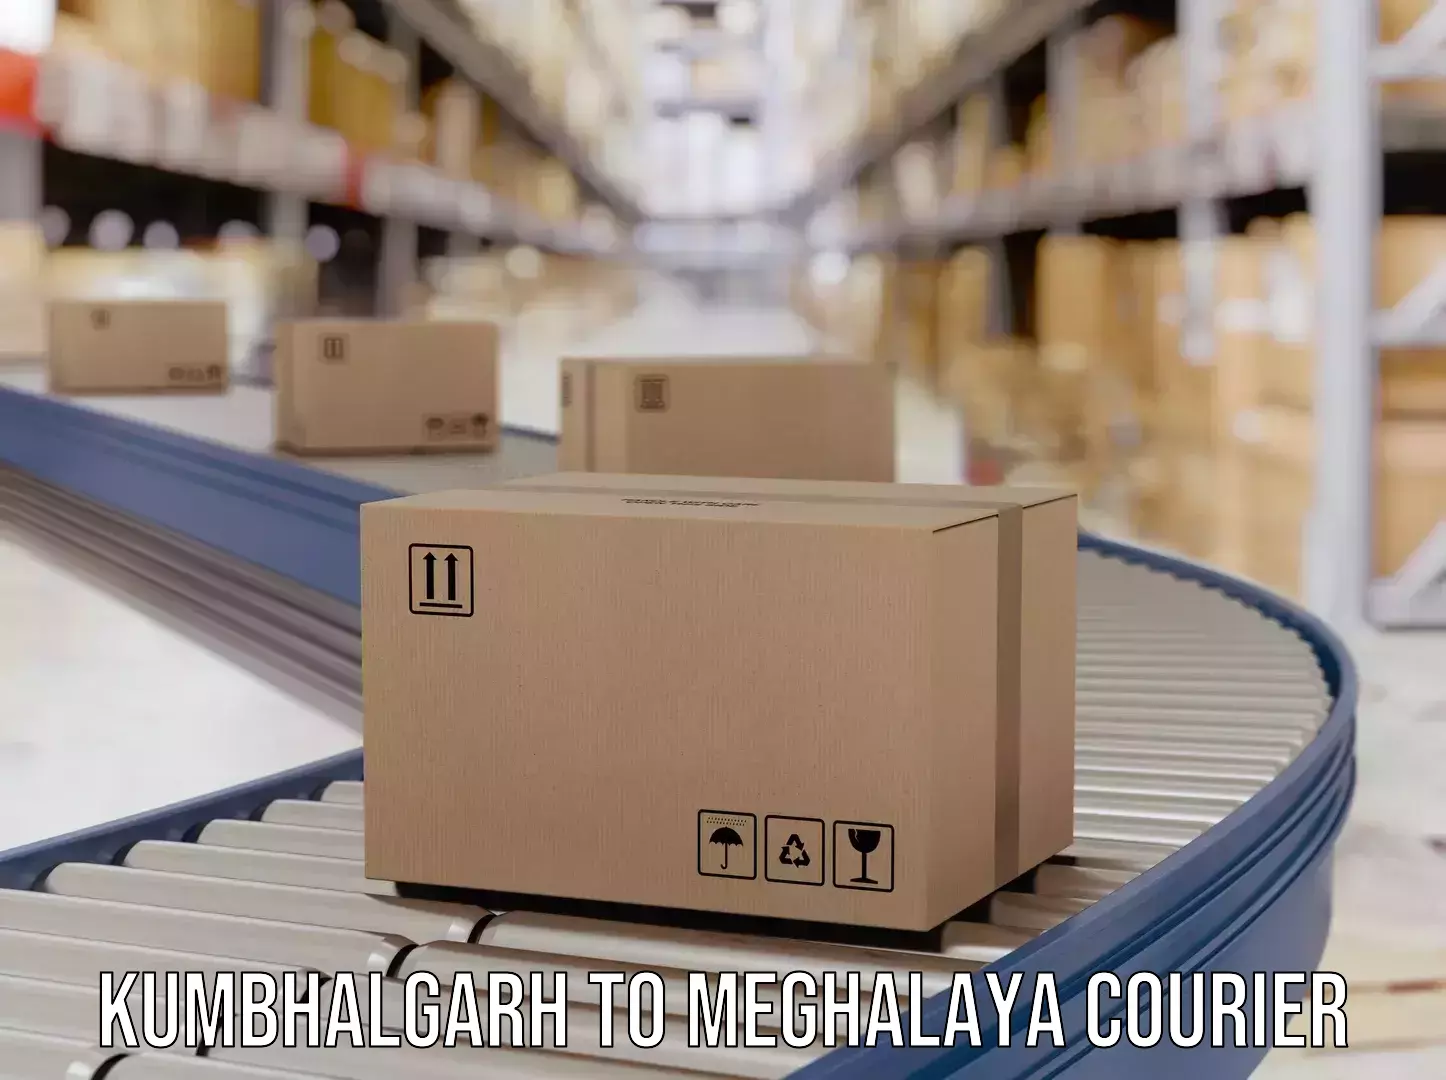 Reliable delivery network Kumbhalgarh to NIT Meghalaya